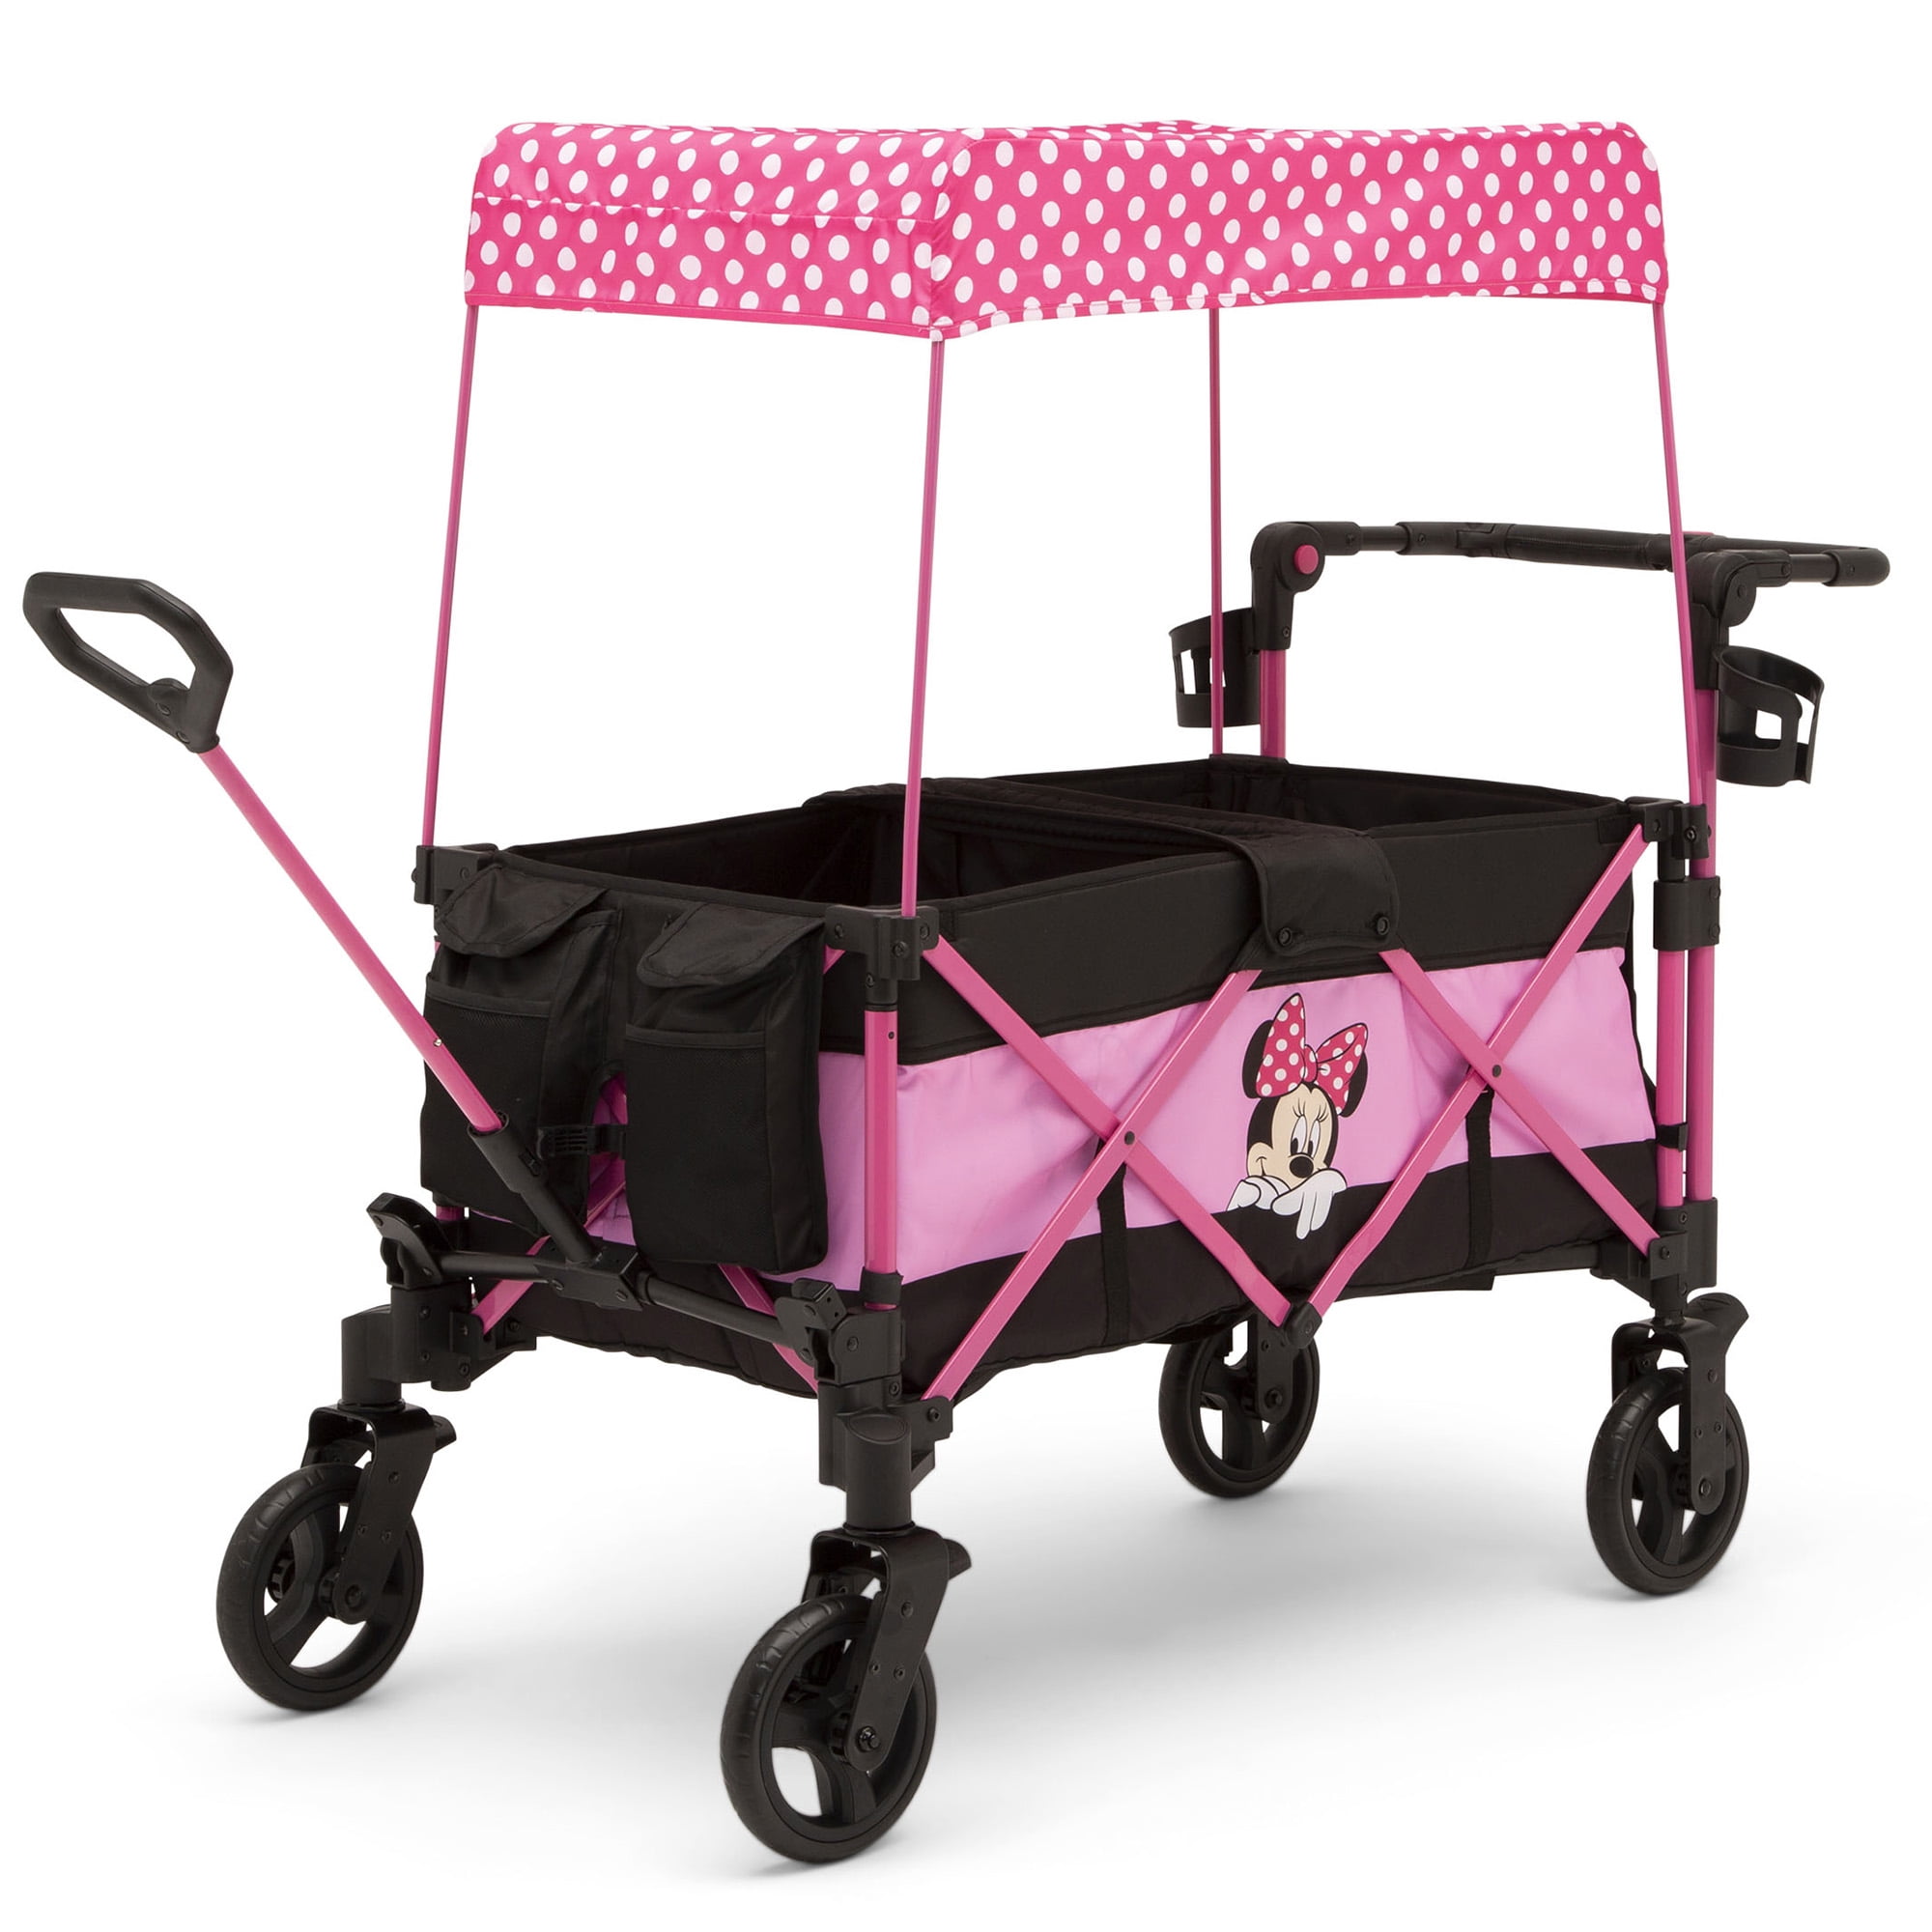 Jumbo Baby Shower Stroller Carriage Cart EVA Foam Centerpiece Nursery Boy Girl 